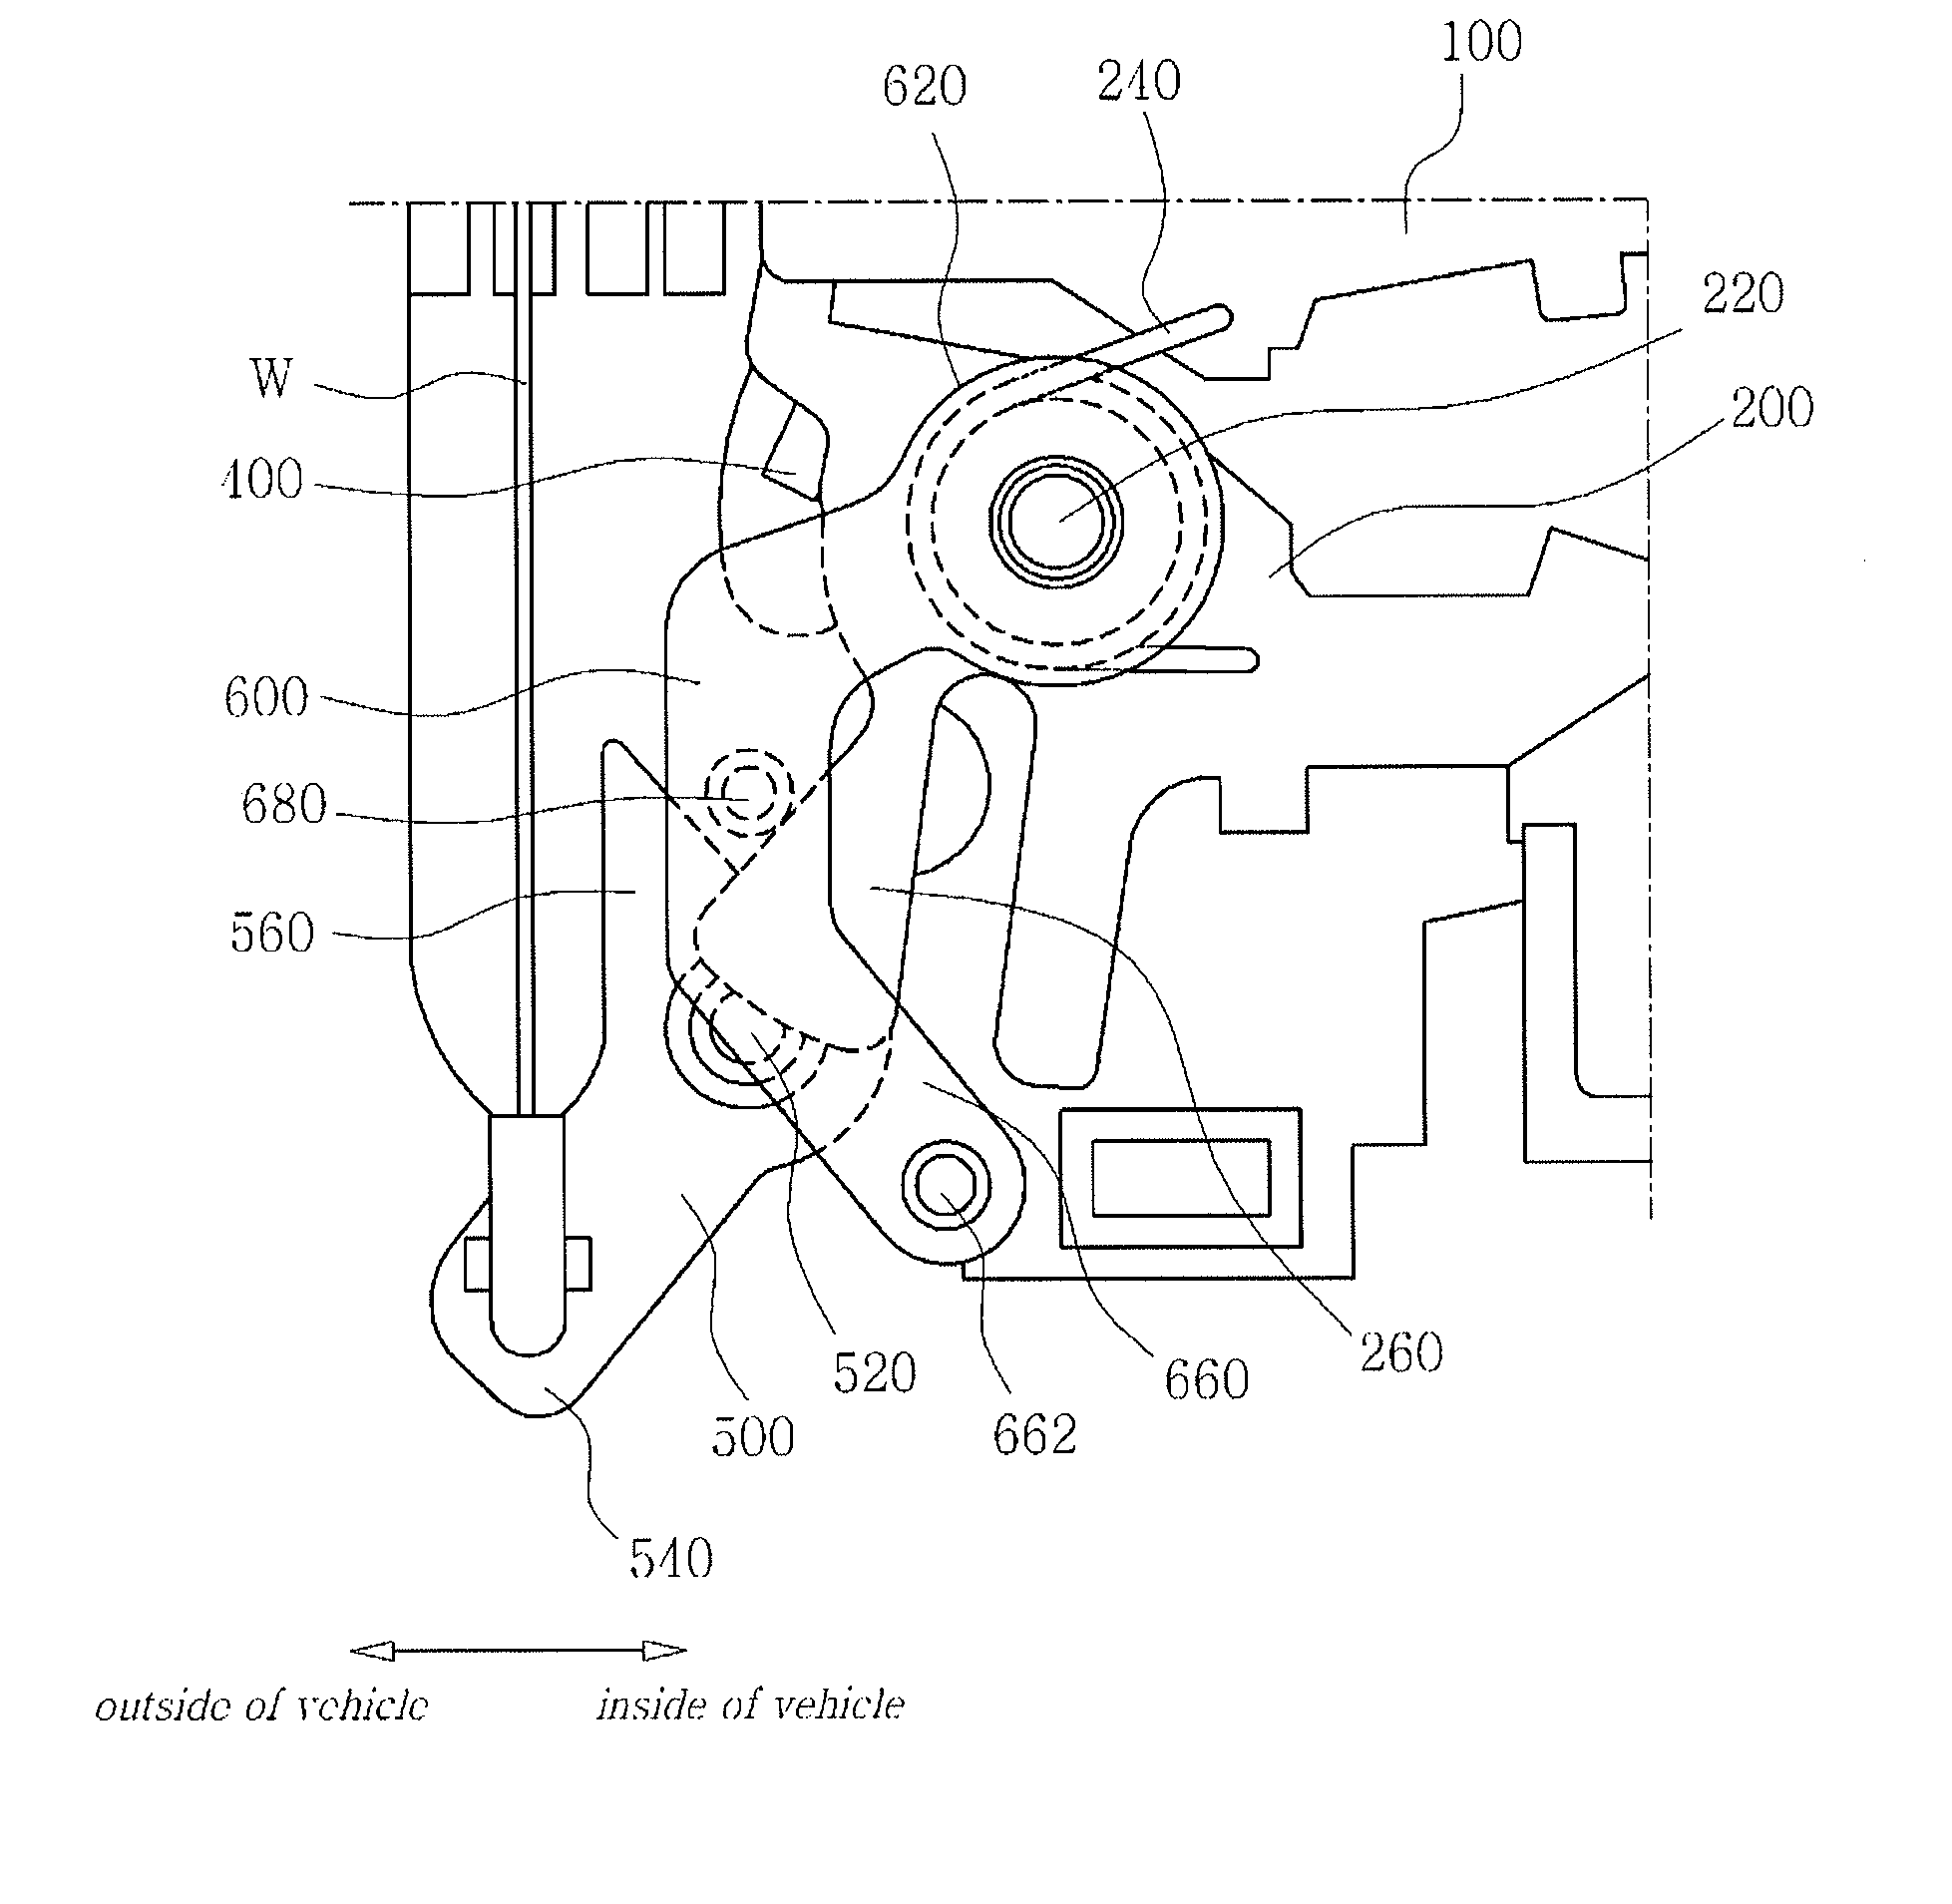 Door latch apparatus for vehicle